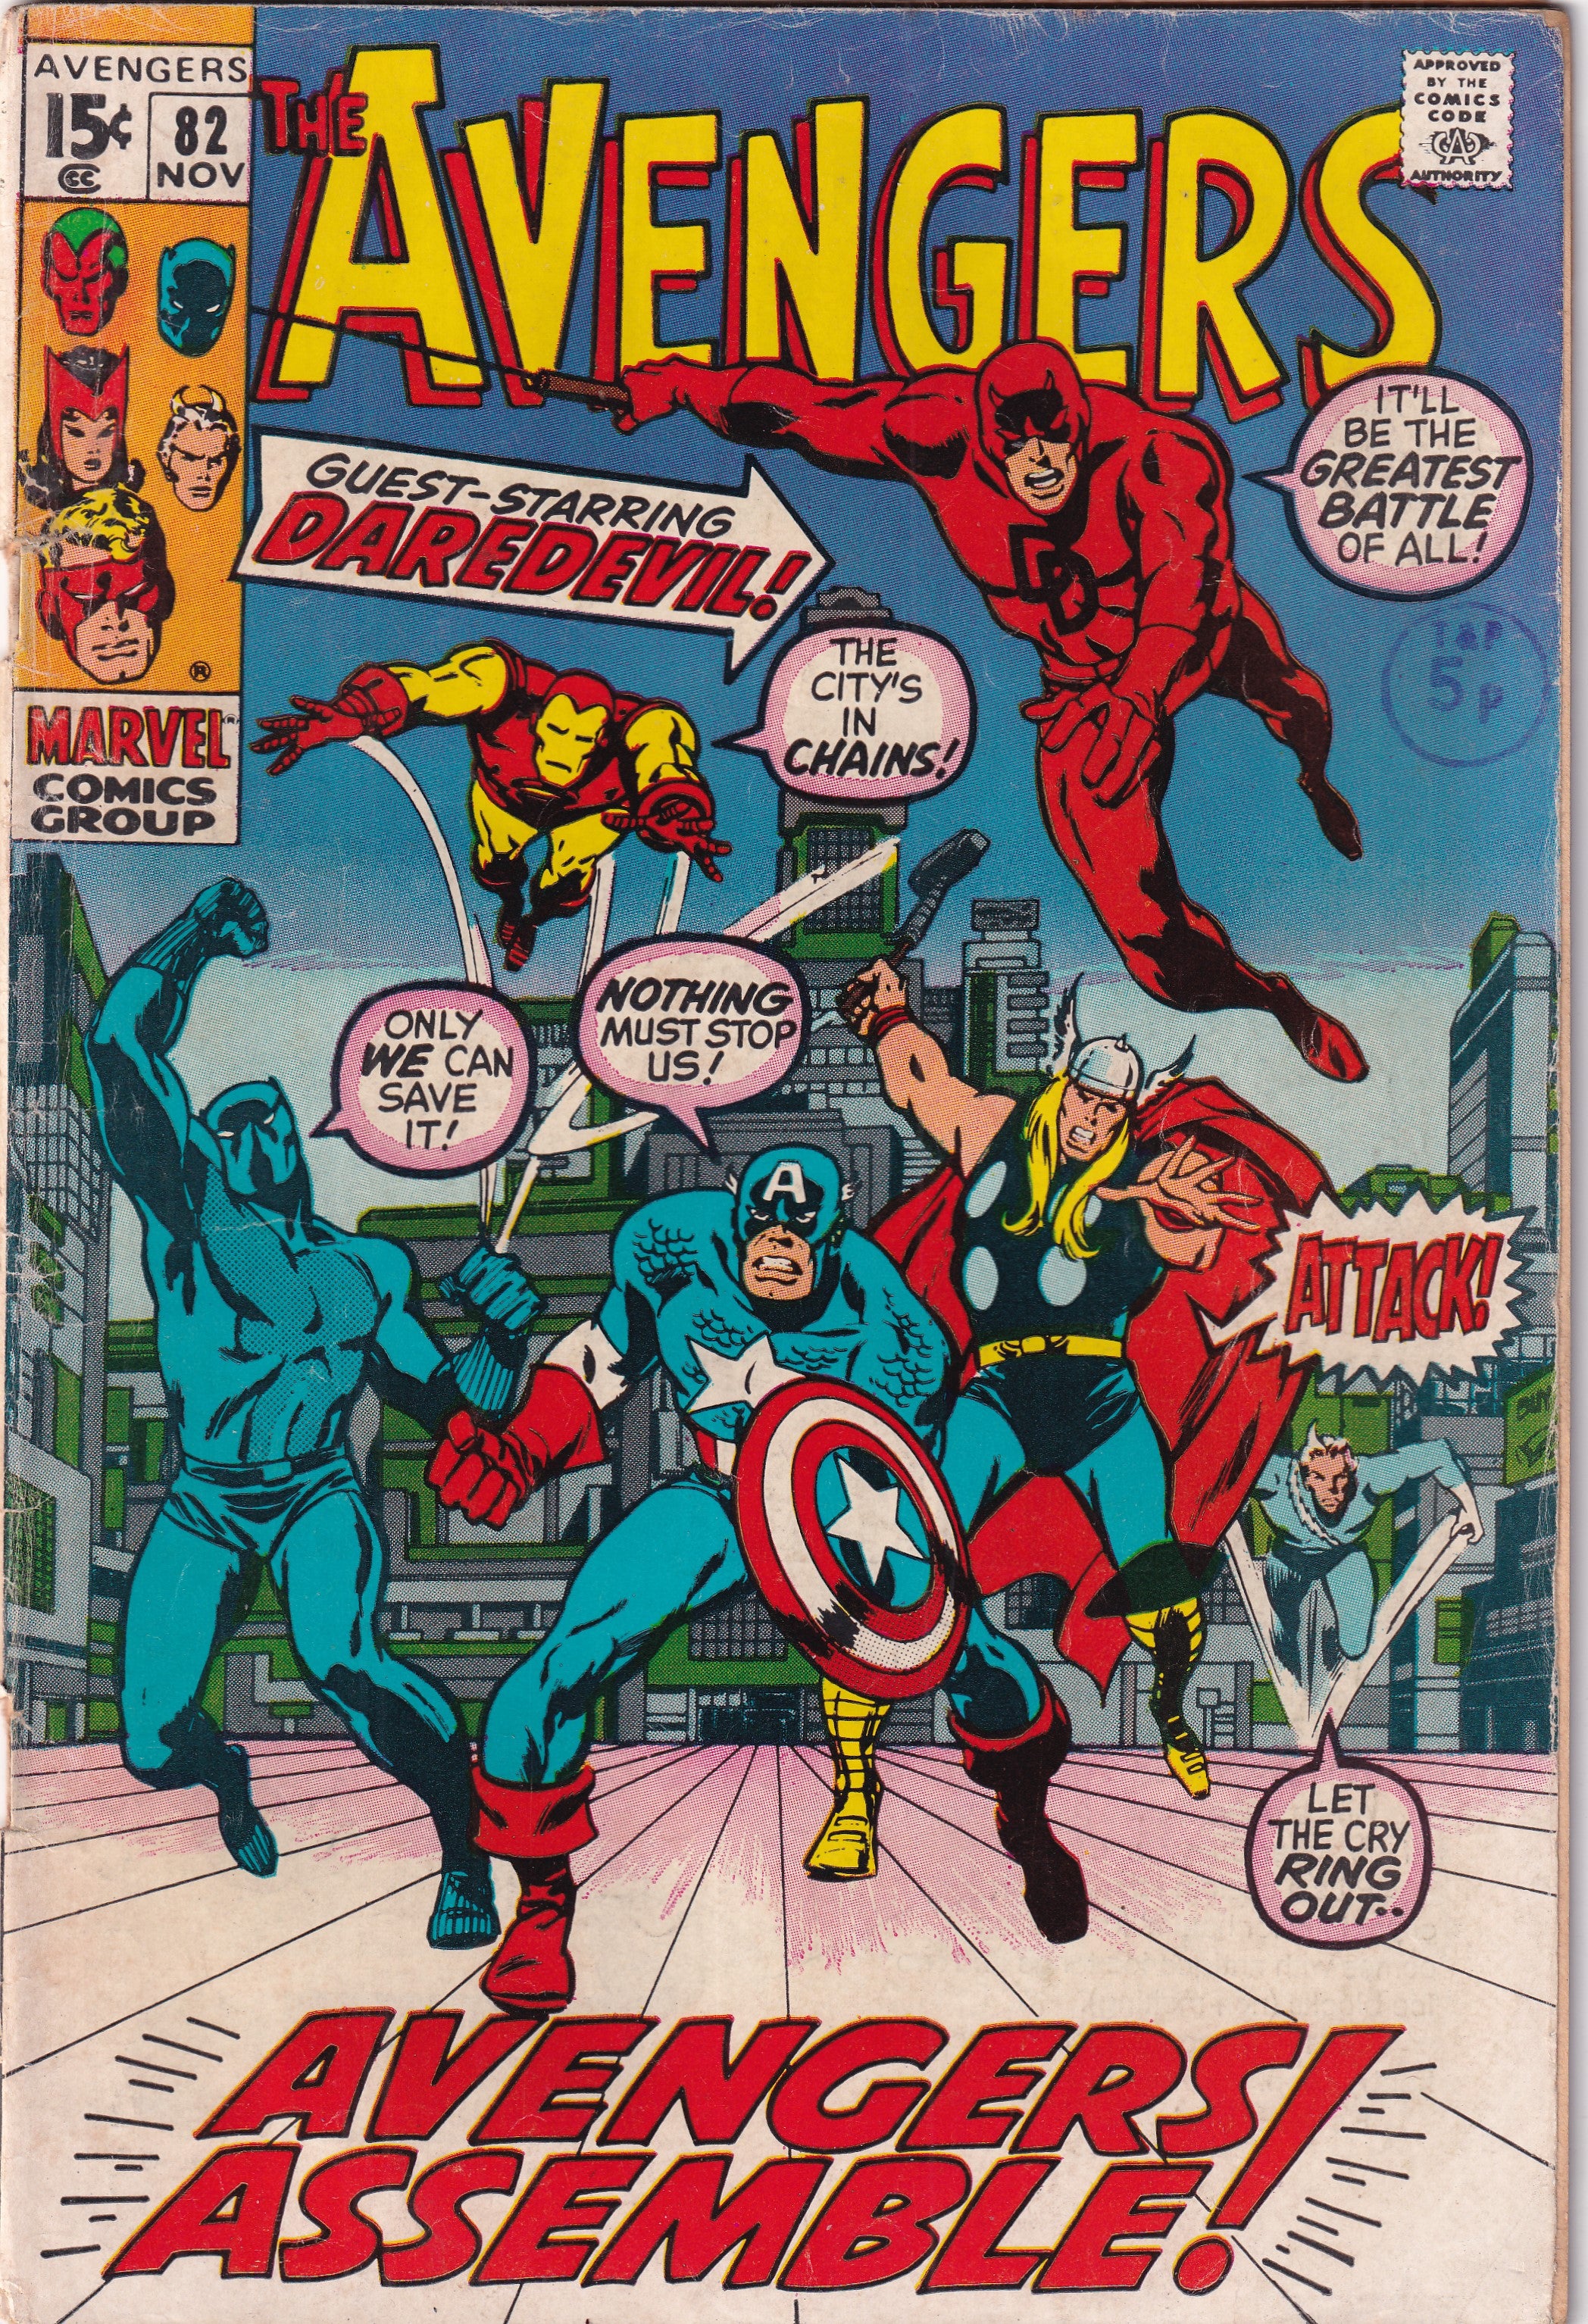 AVENGERS #82 - Slab City Comics 